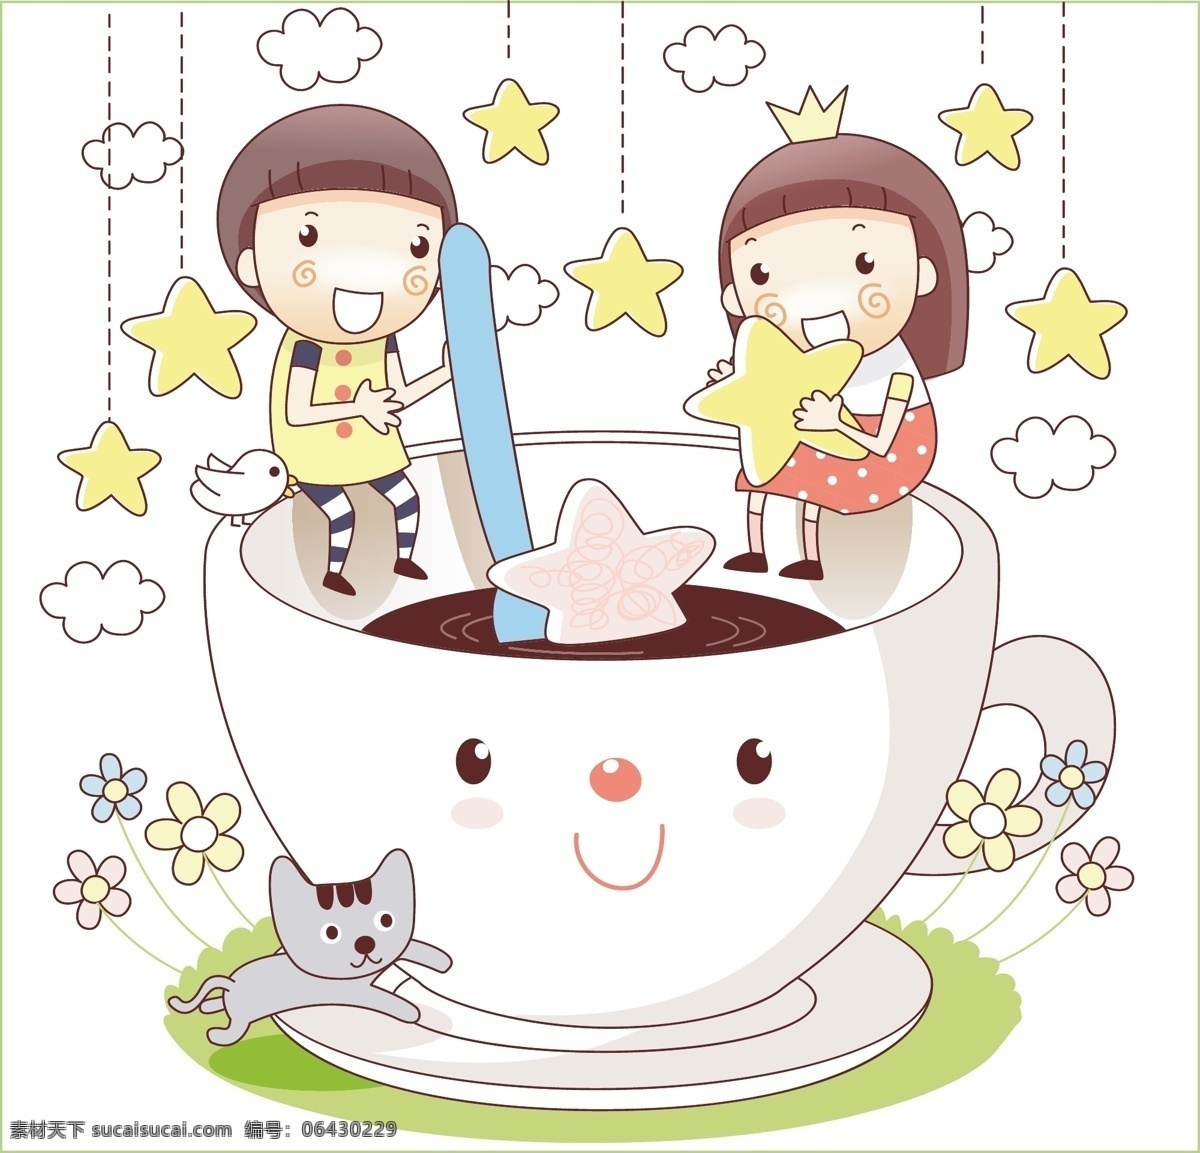 最新 韩国 矢量 卡通 儿童矢量图 风景cdr 矢量卡通图 矢量情侣图 矢量图免费